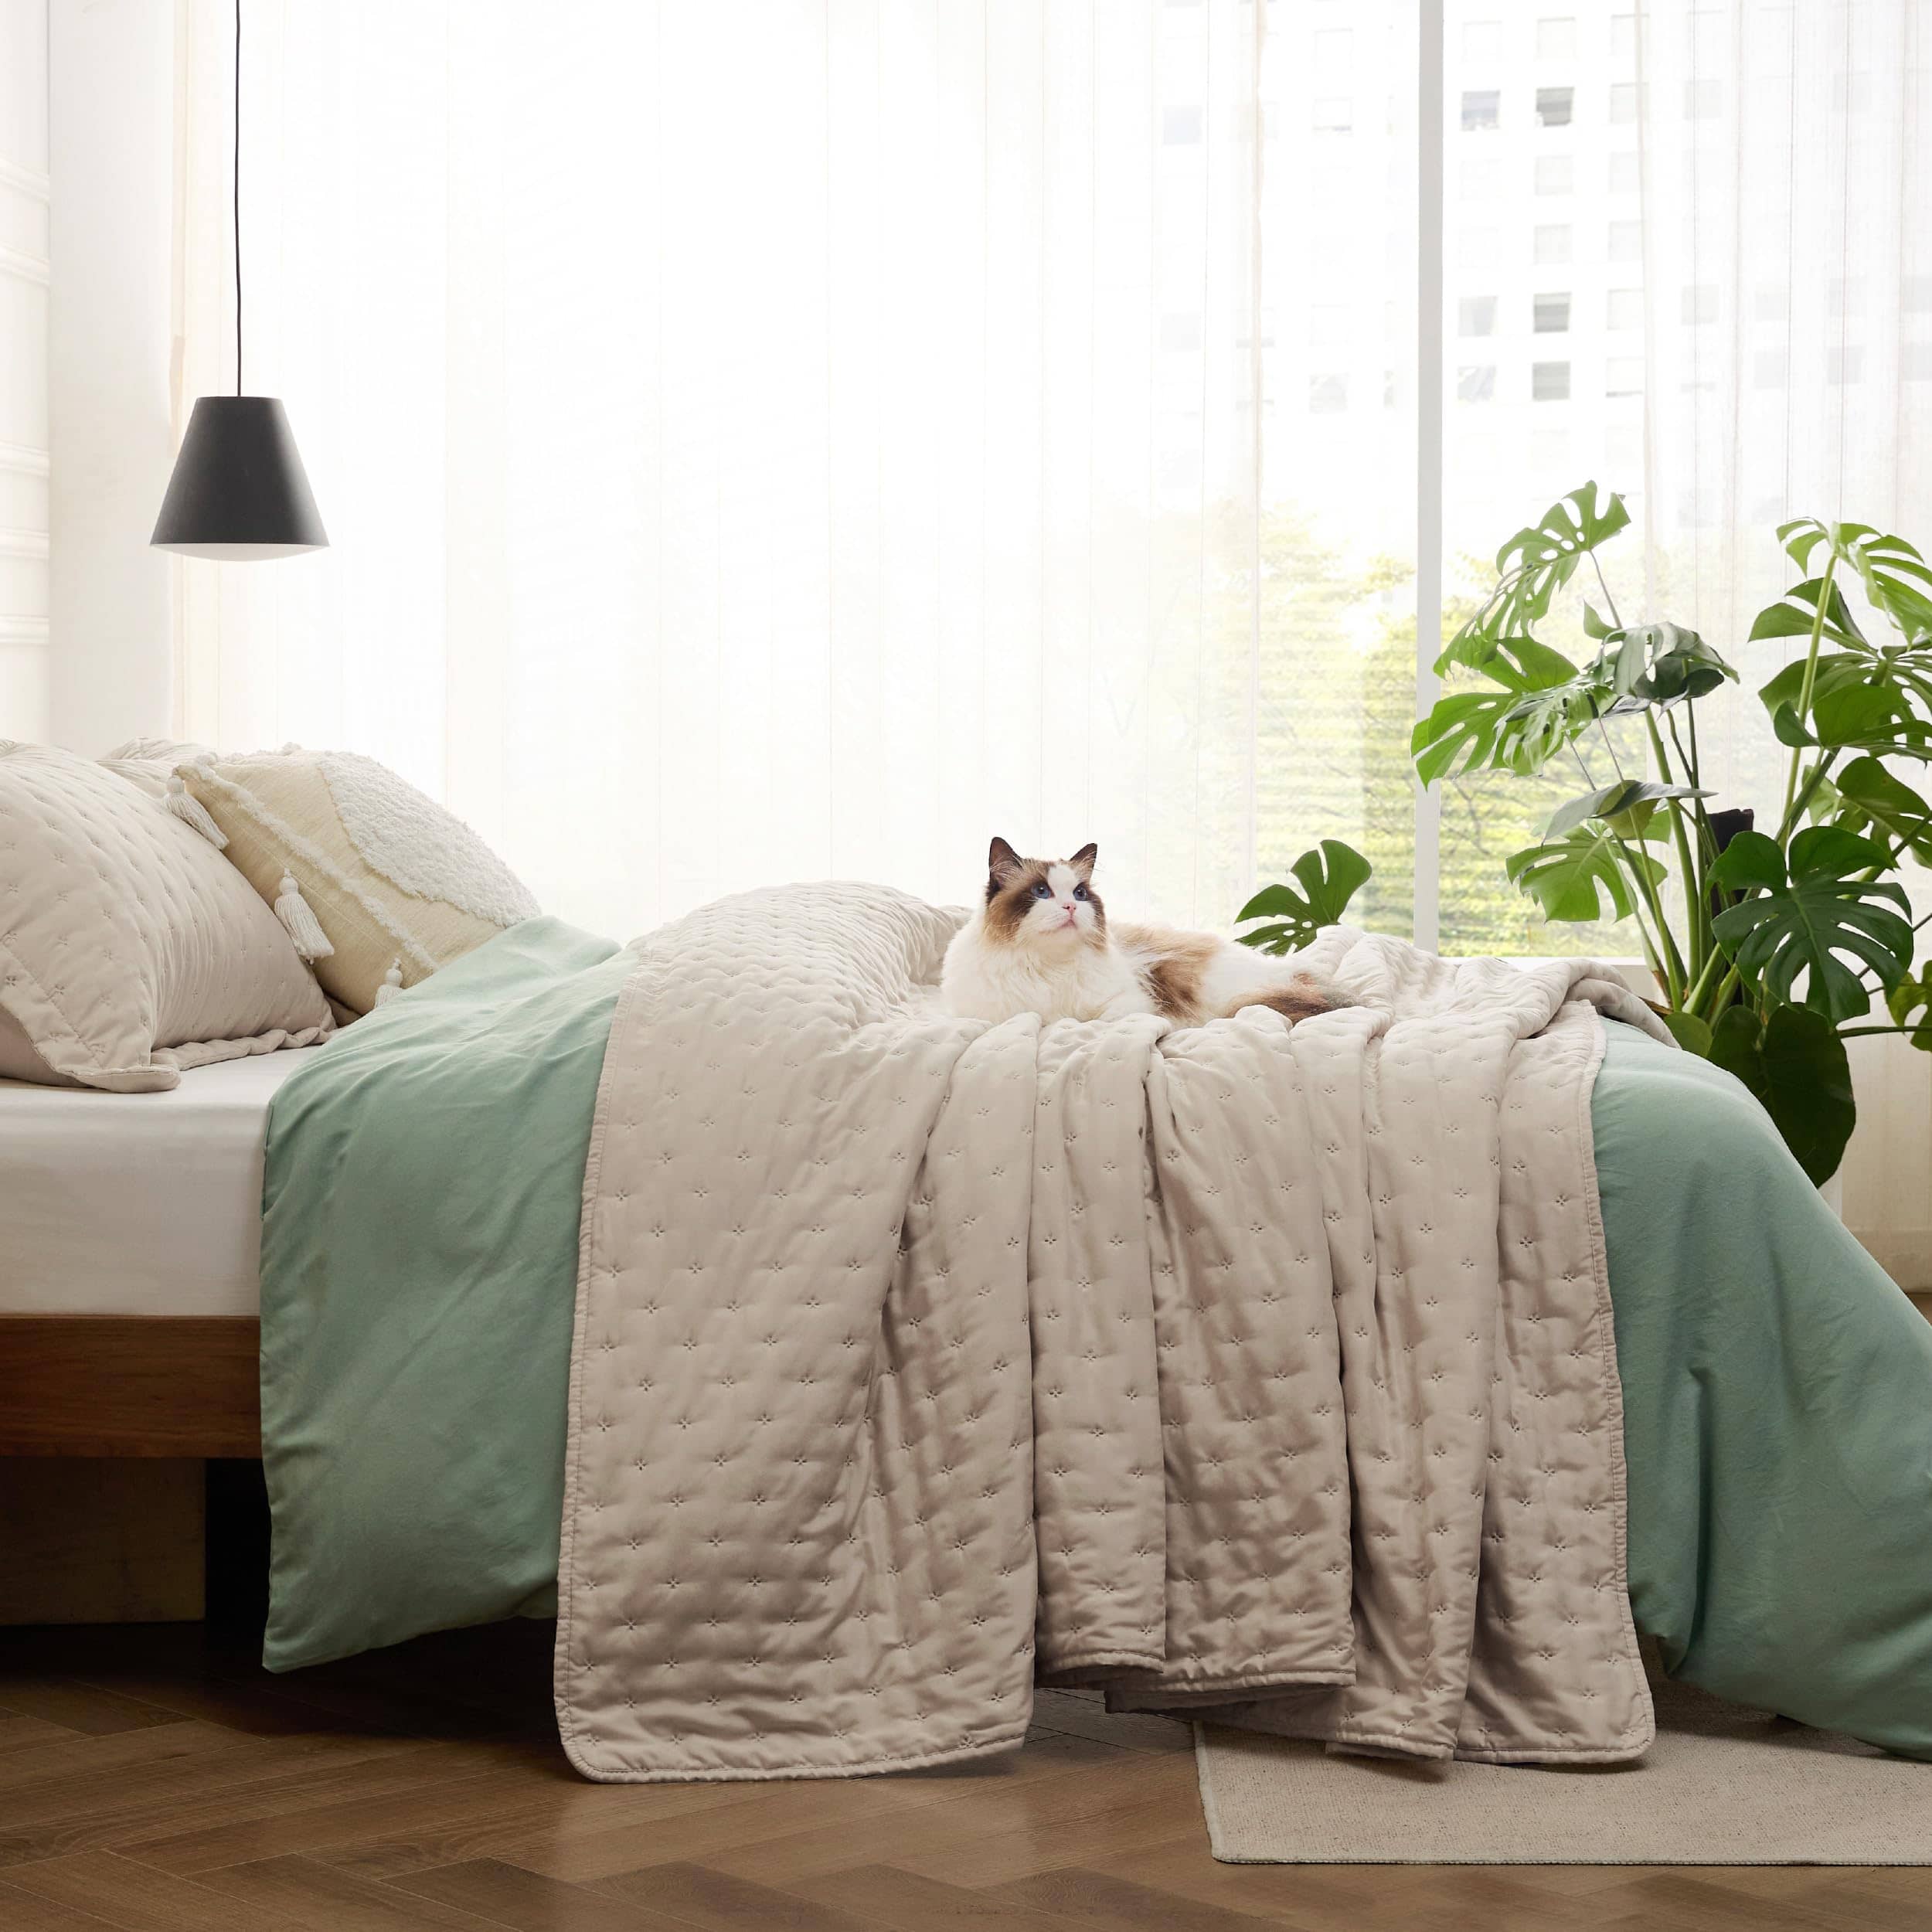 Bedsure King Size Comforter Set - Sage Green Comforter Set Reversible Floral  Bed